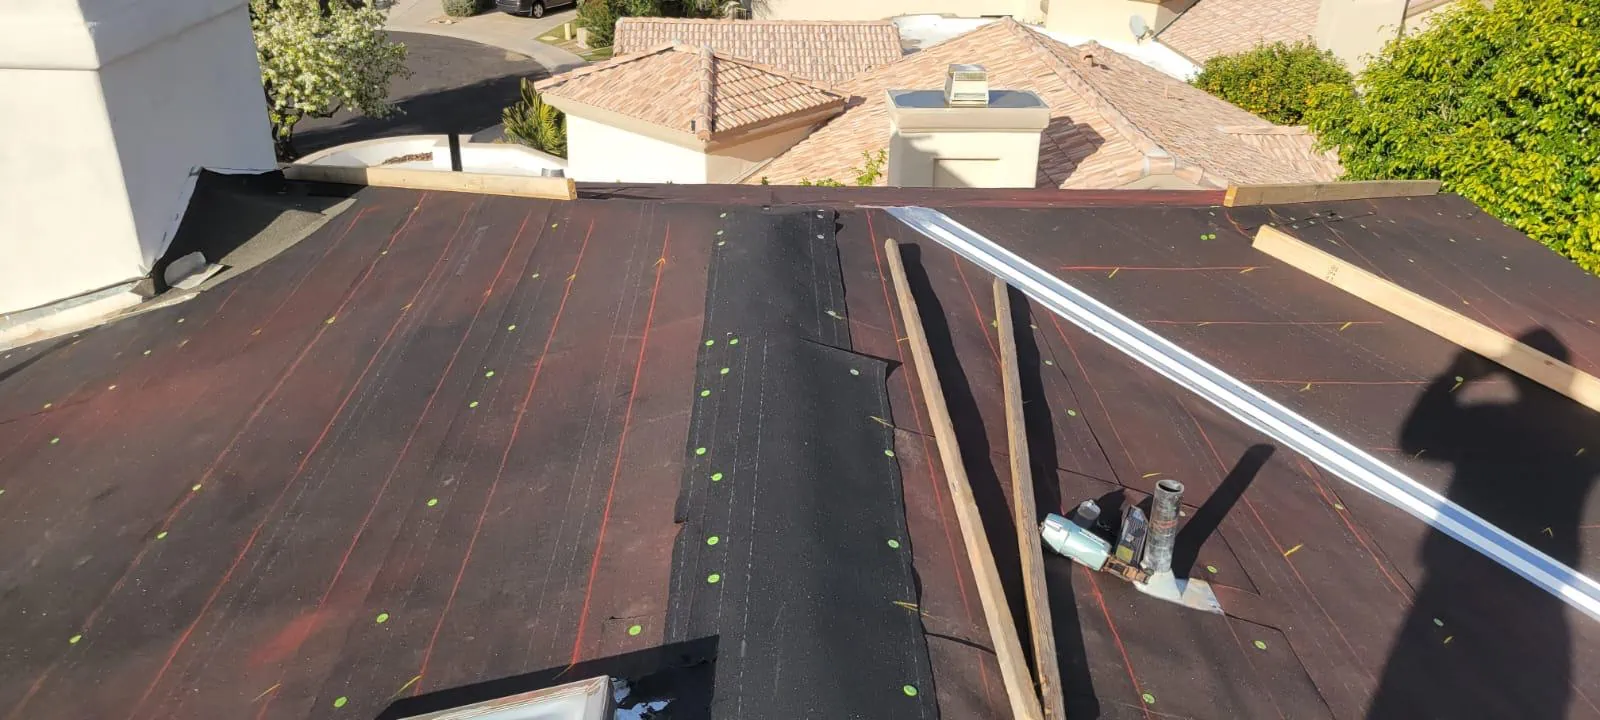 repair tile roof in mesa